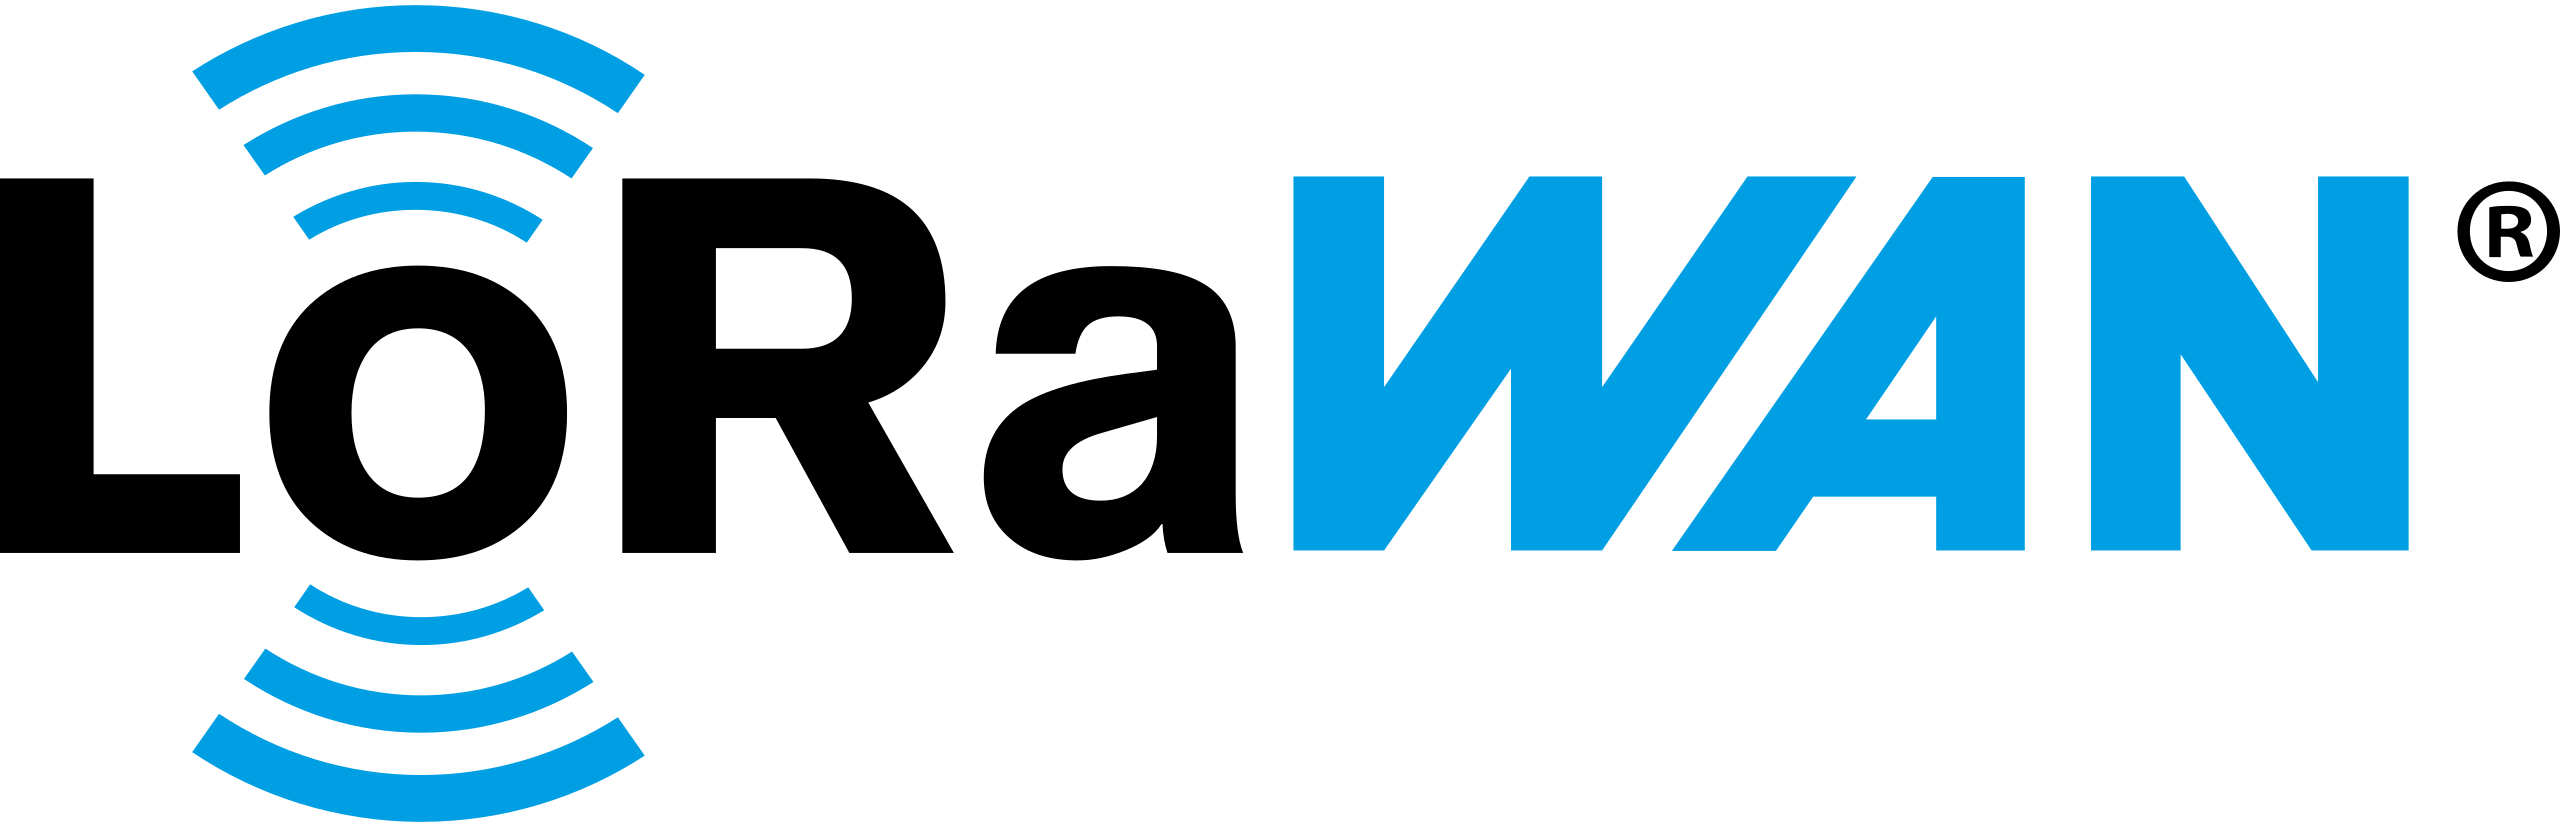 LoRaWAN_Logo.svg